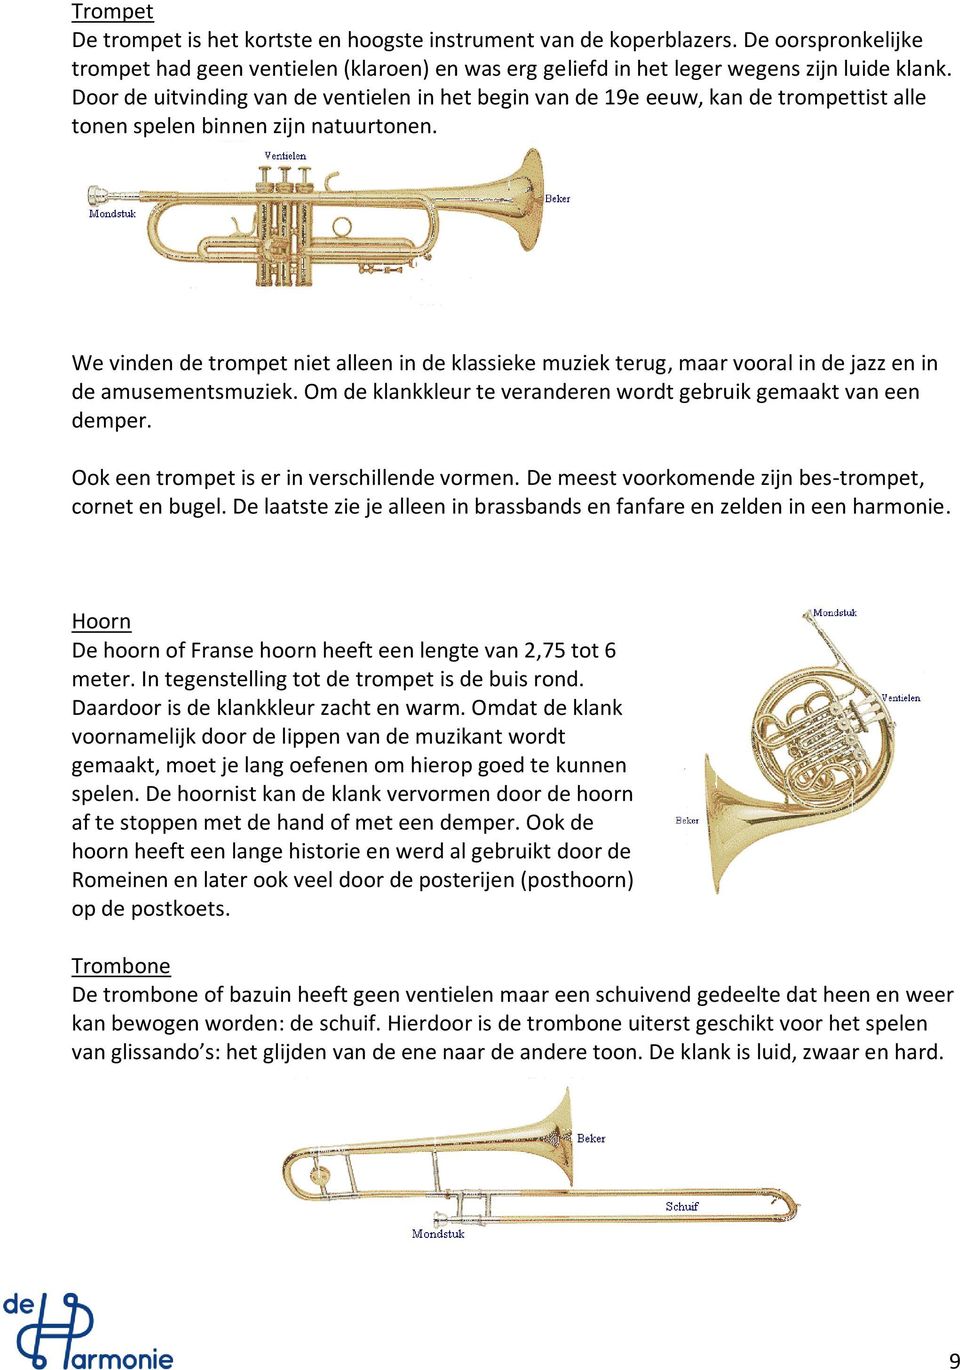 We vinden de trompet niet alleen in de klassieke muziek terug, maar vooral in de jazz en in de amusementsmuziek. Om de klankkleur te veranderen wordt gebruik gemaakt van een demper.